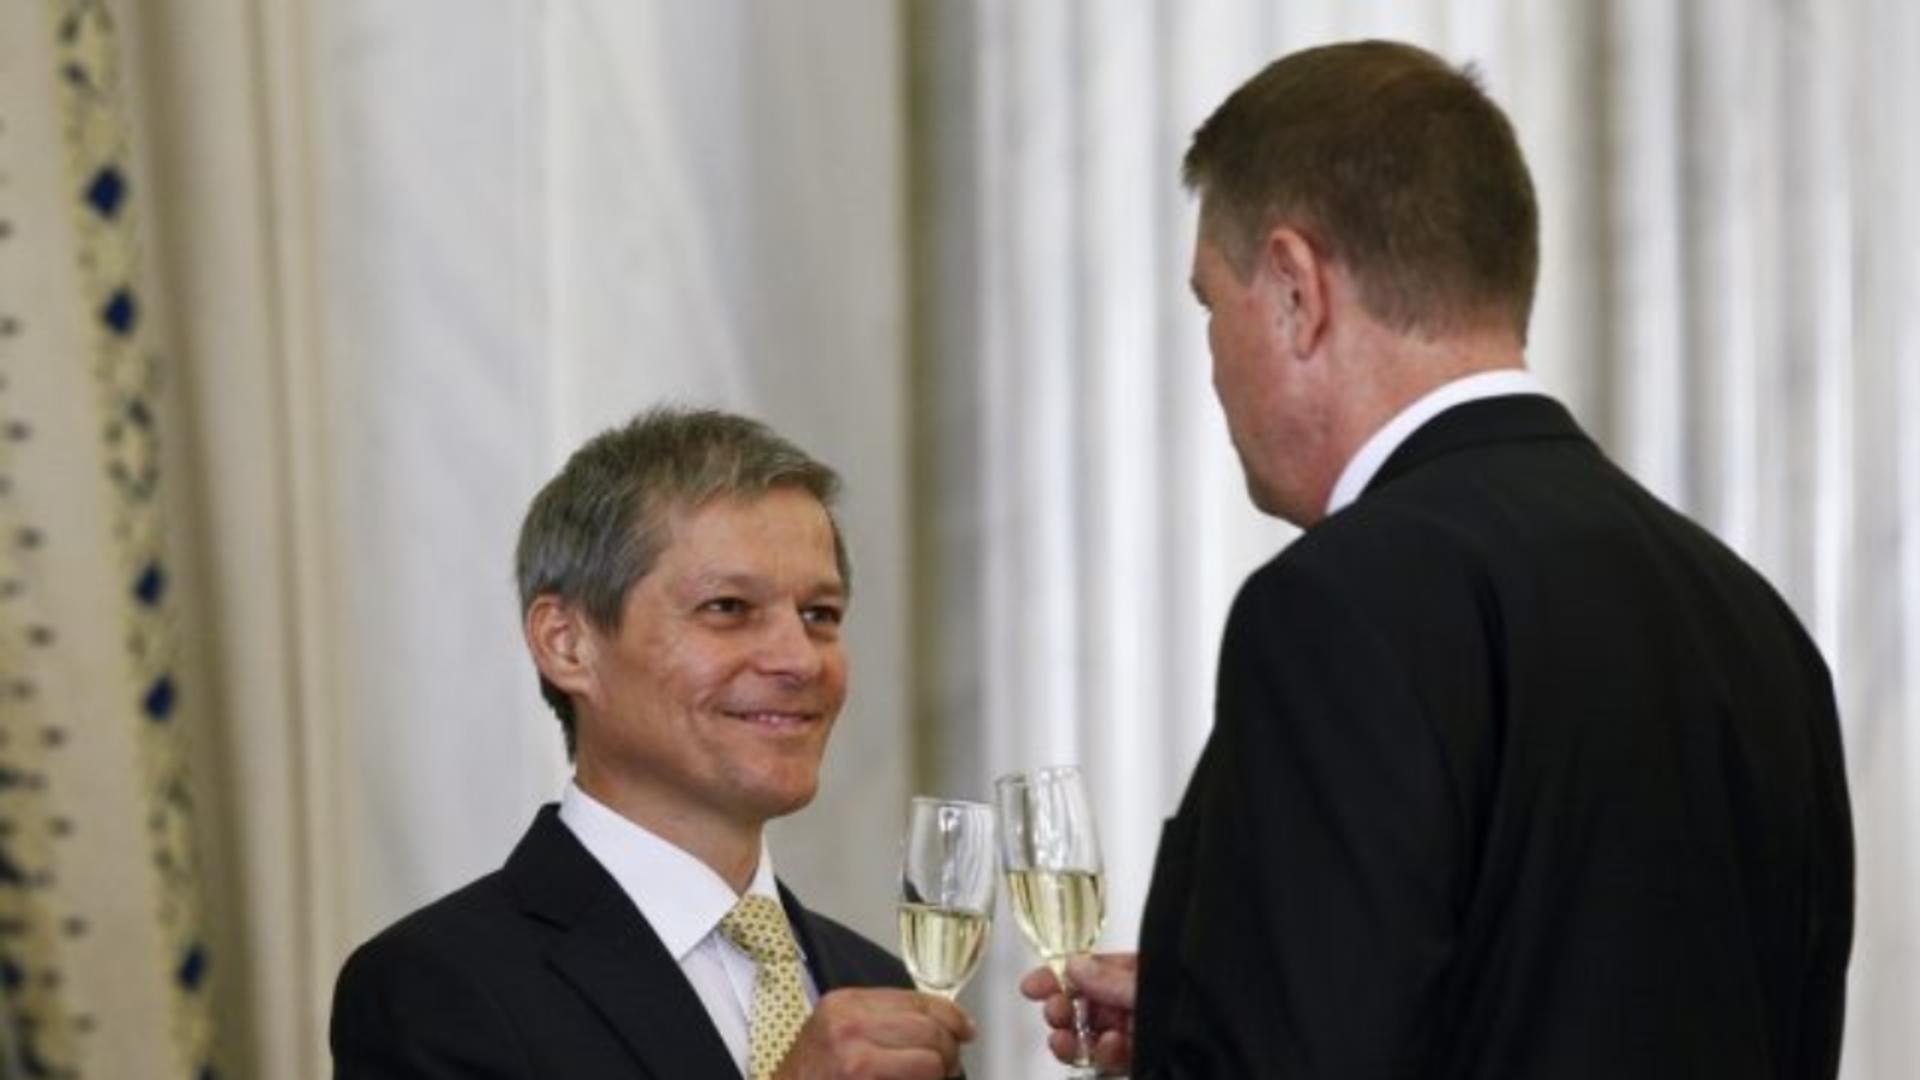 Cioloș spune că demiterea lui Iohannis nu schimbă cu nimic actuala situație. Foto/Inquam